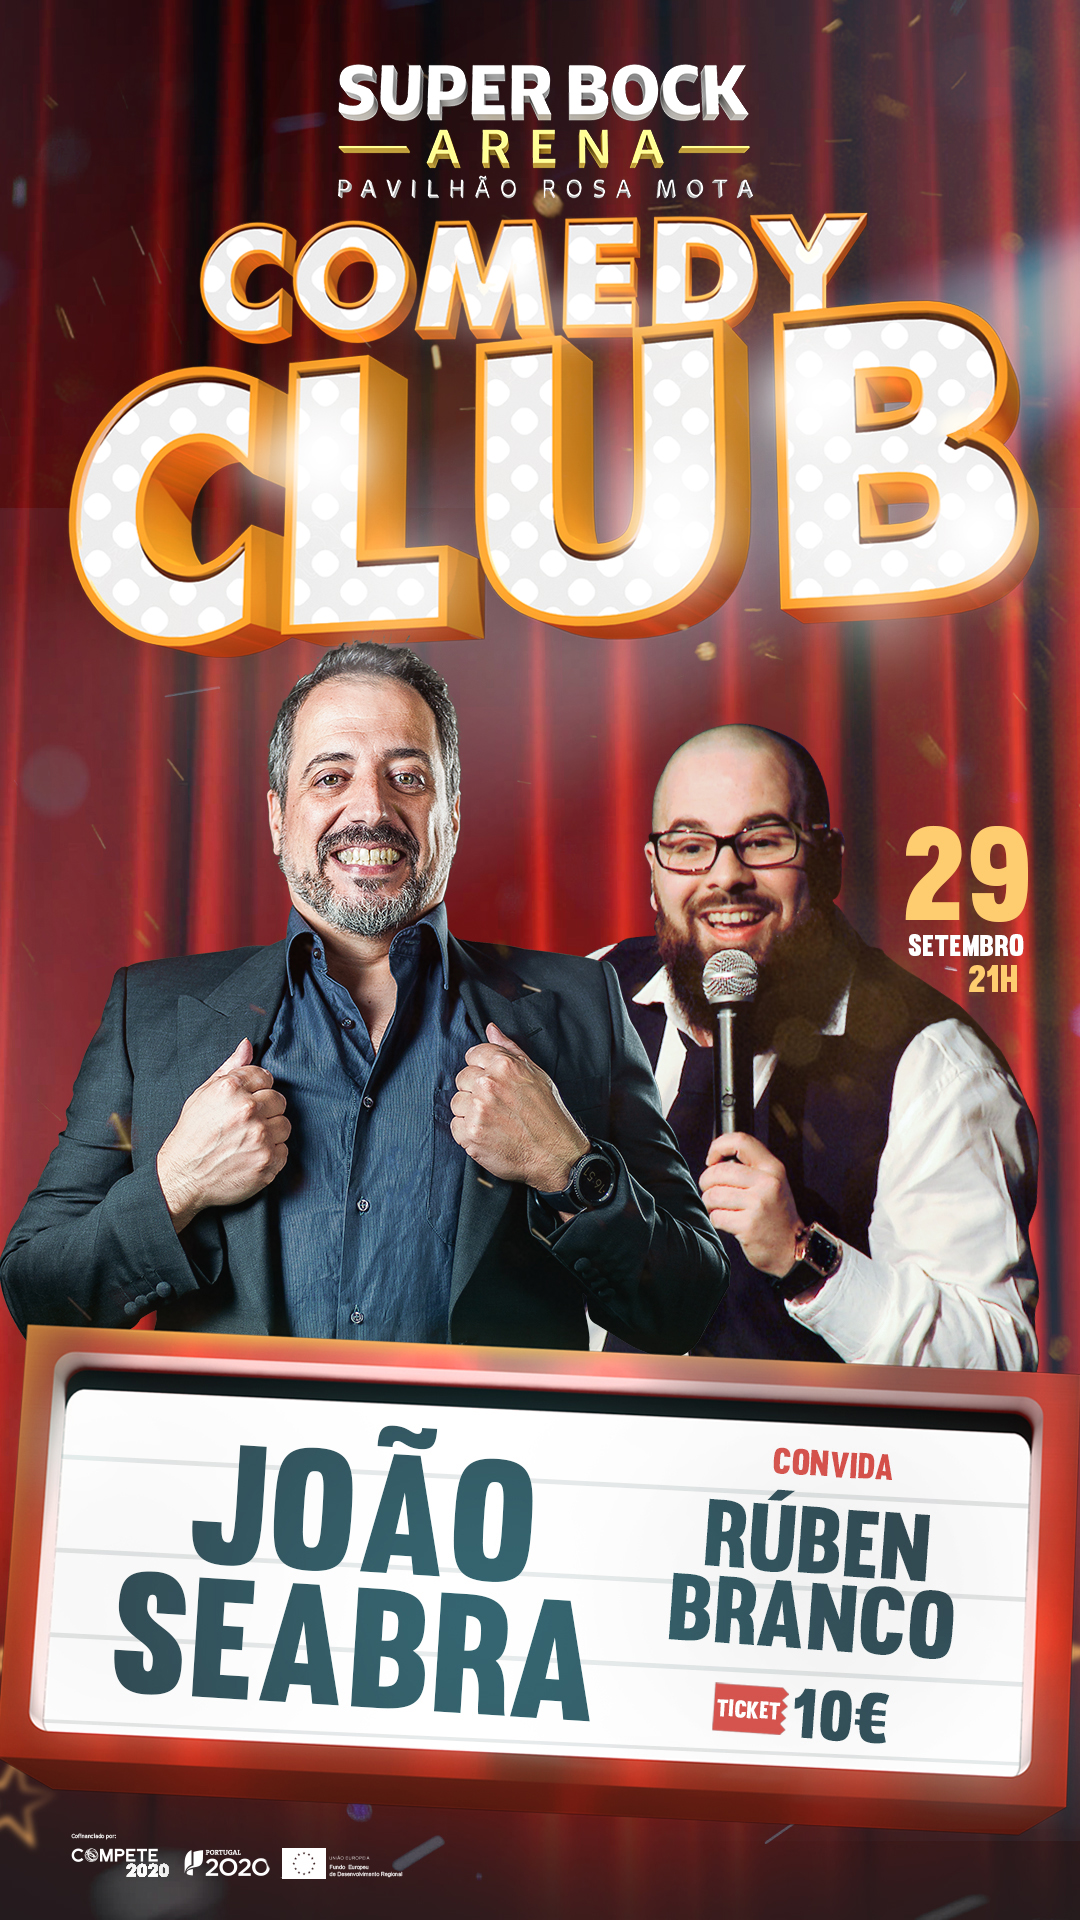 Comedy Club - Event